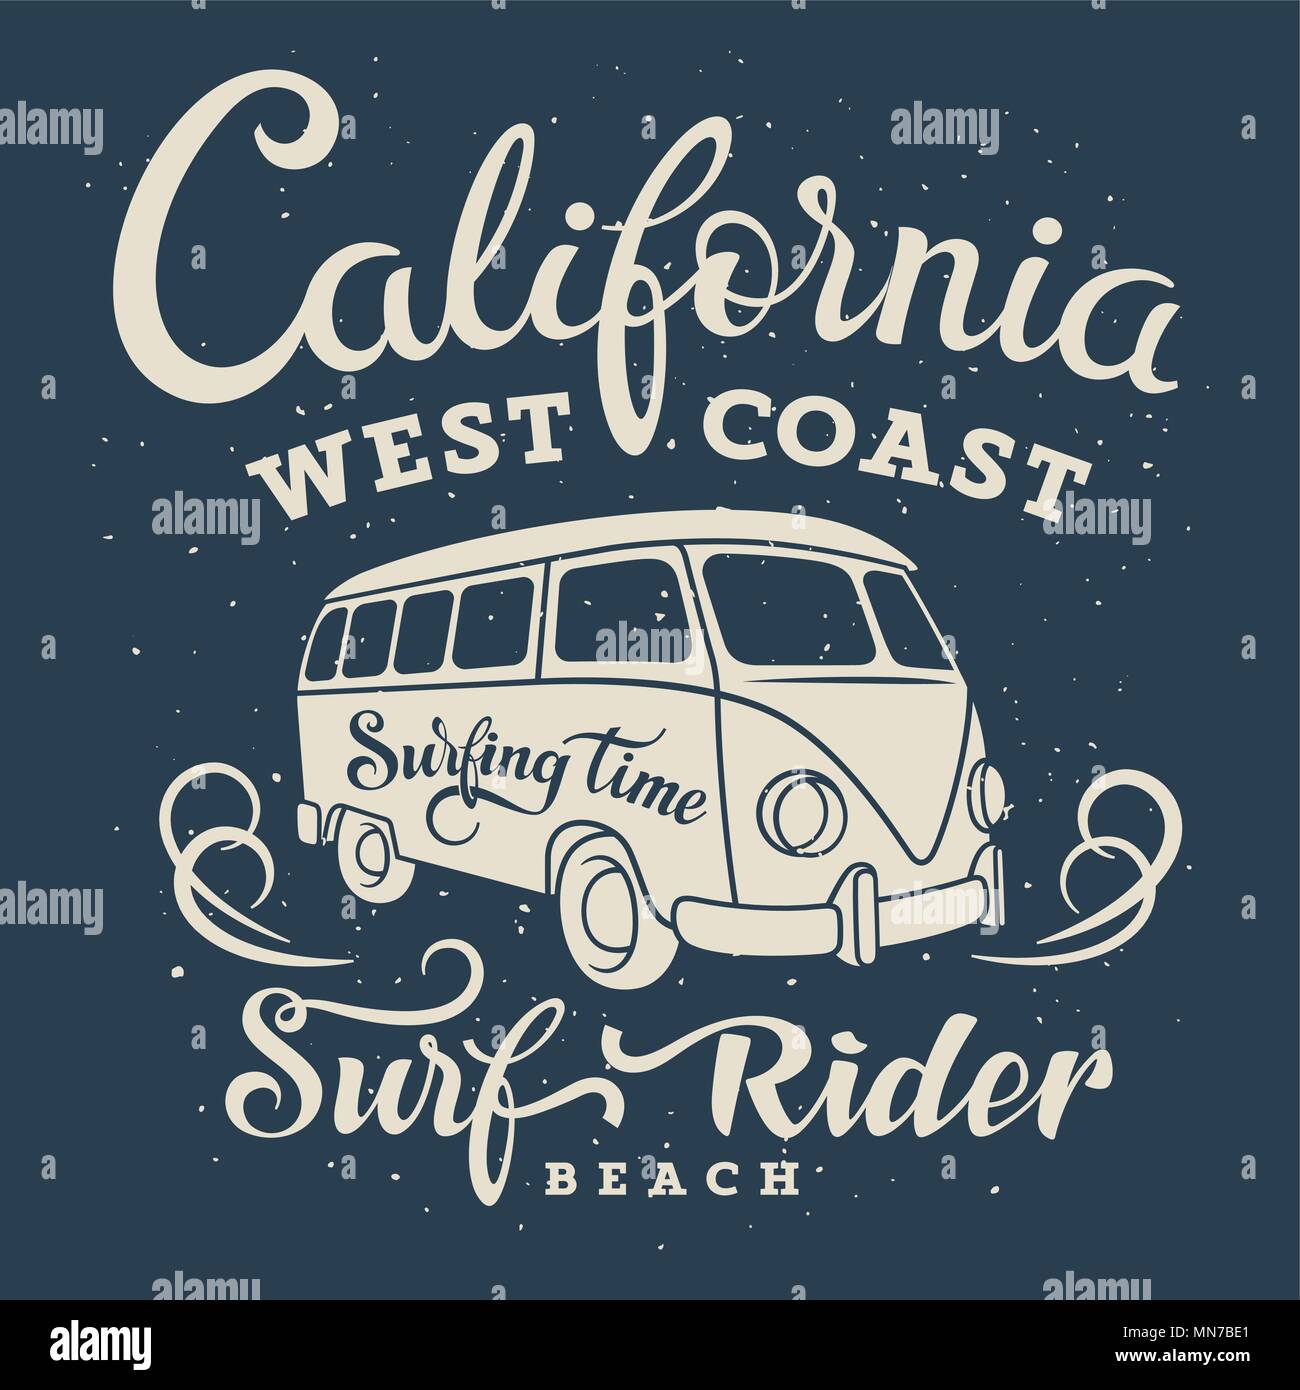 Illustrazione di surf con un furgone hippie. California West Coast. Surfrider beach. T-shirt abbigliamento stampa di grafica. Grafica originale Tee Illustrazione Vettoriale